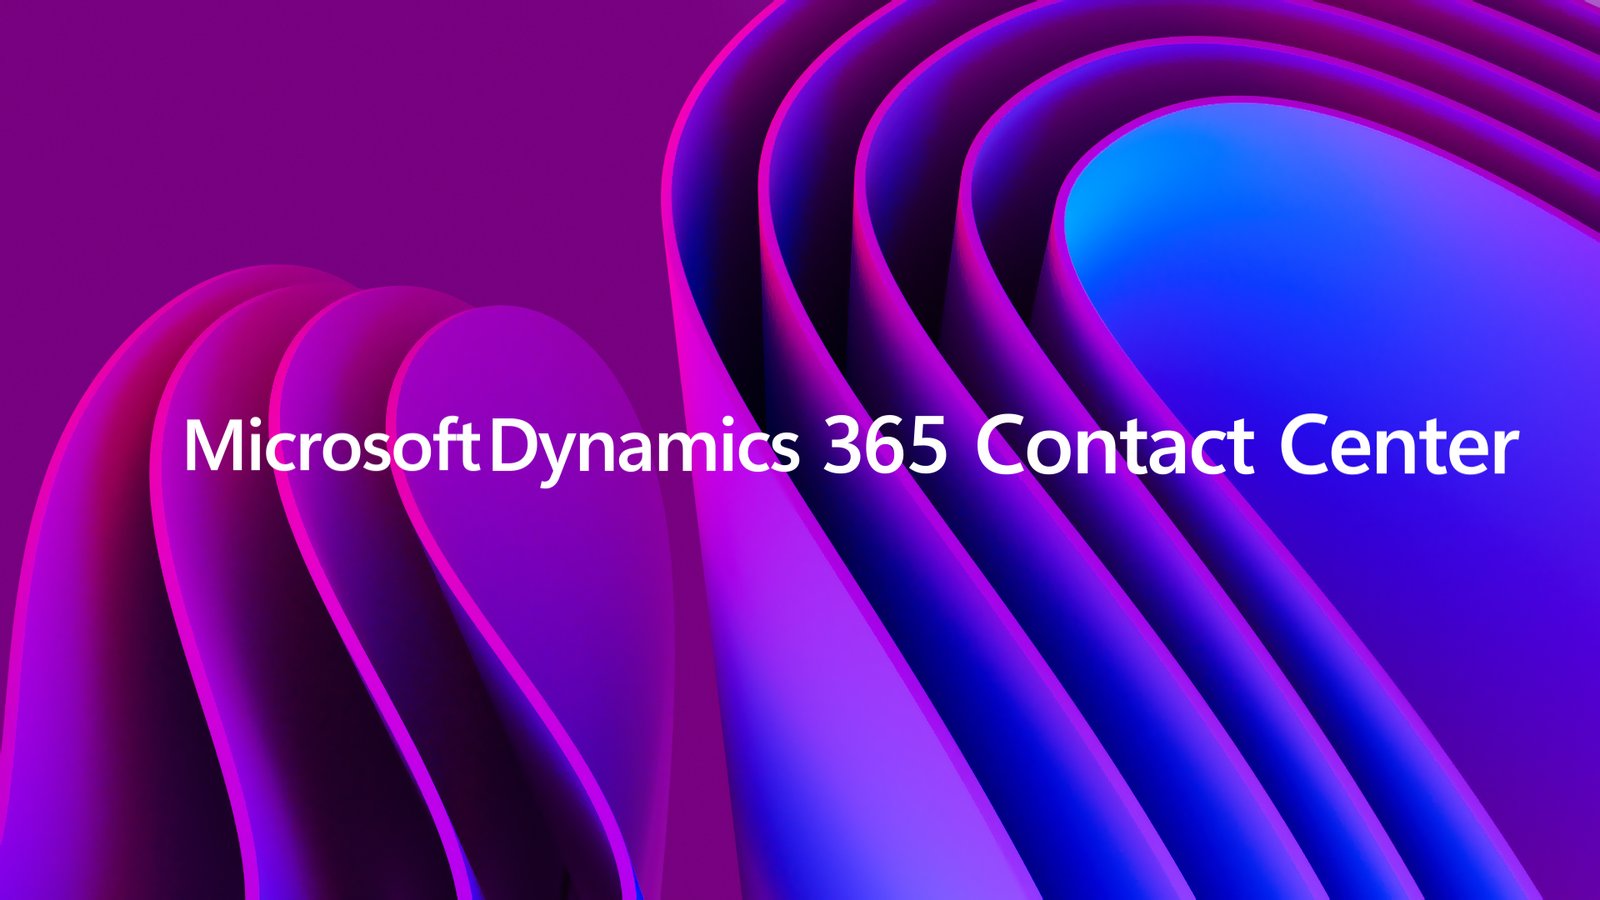 Dynamics 365 Contact Center